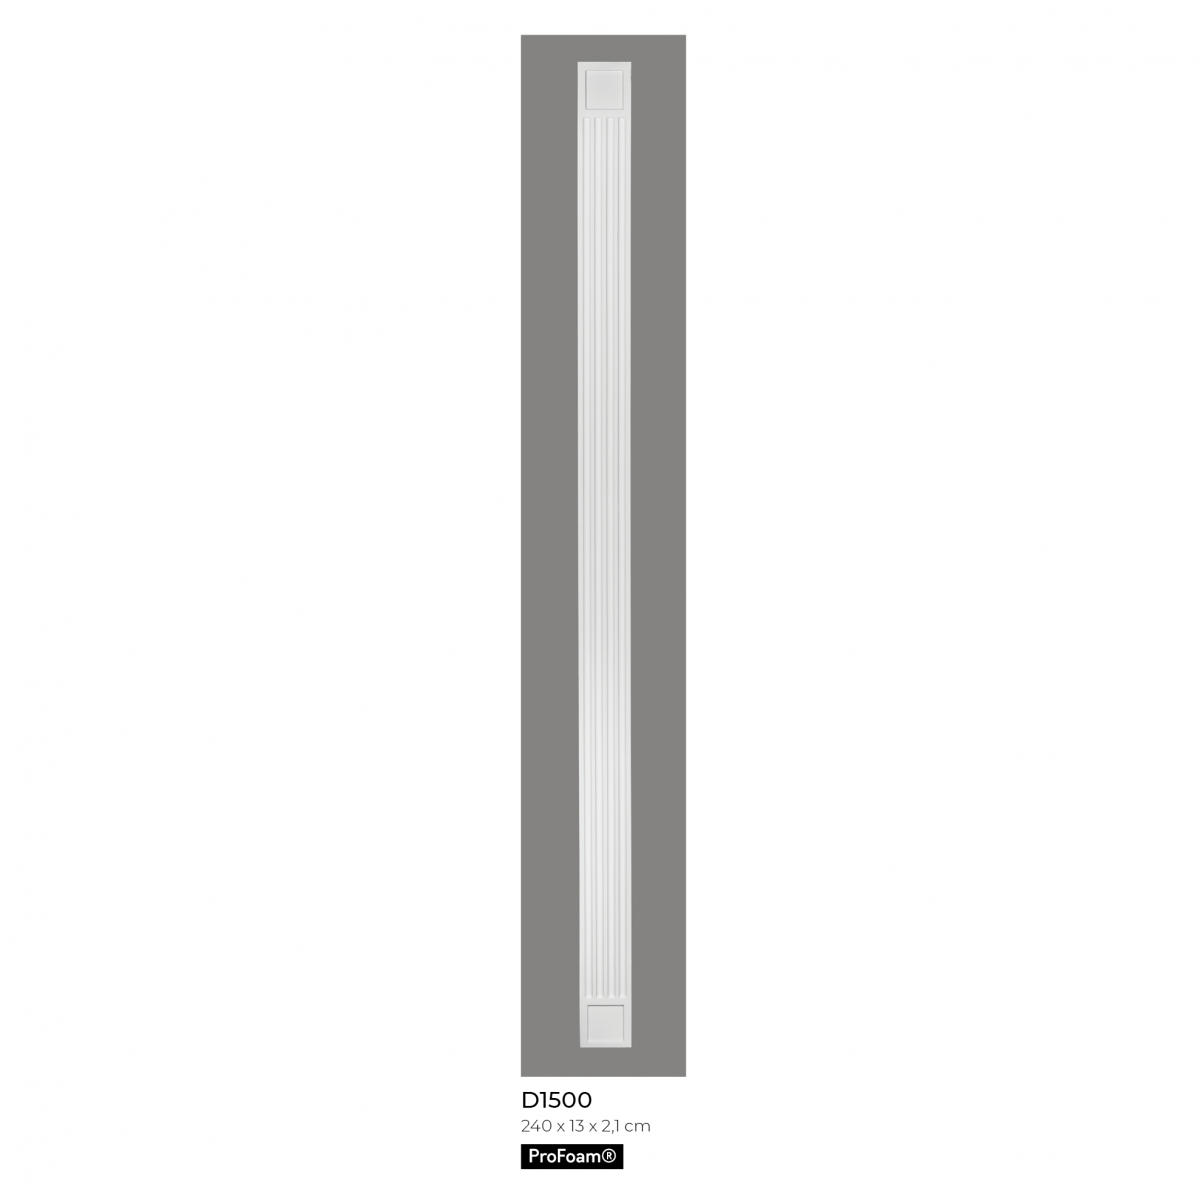 Pilastru D1500, 240 x 13 x 2.1 cm, Mardom Decor, Coloane si semicoloane 